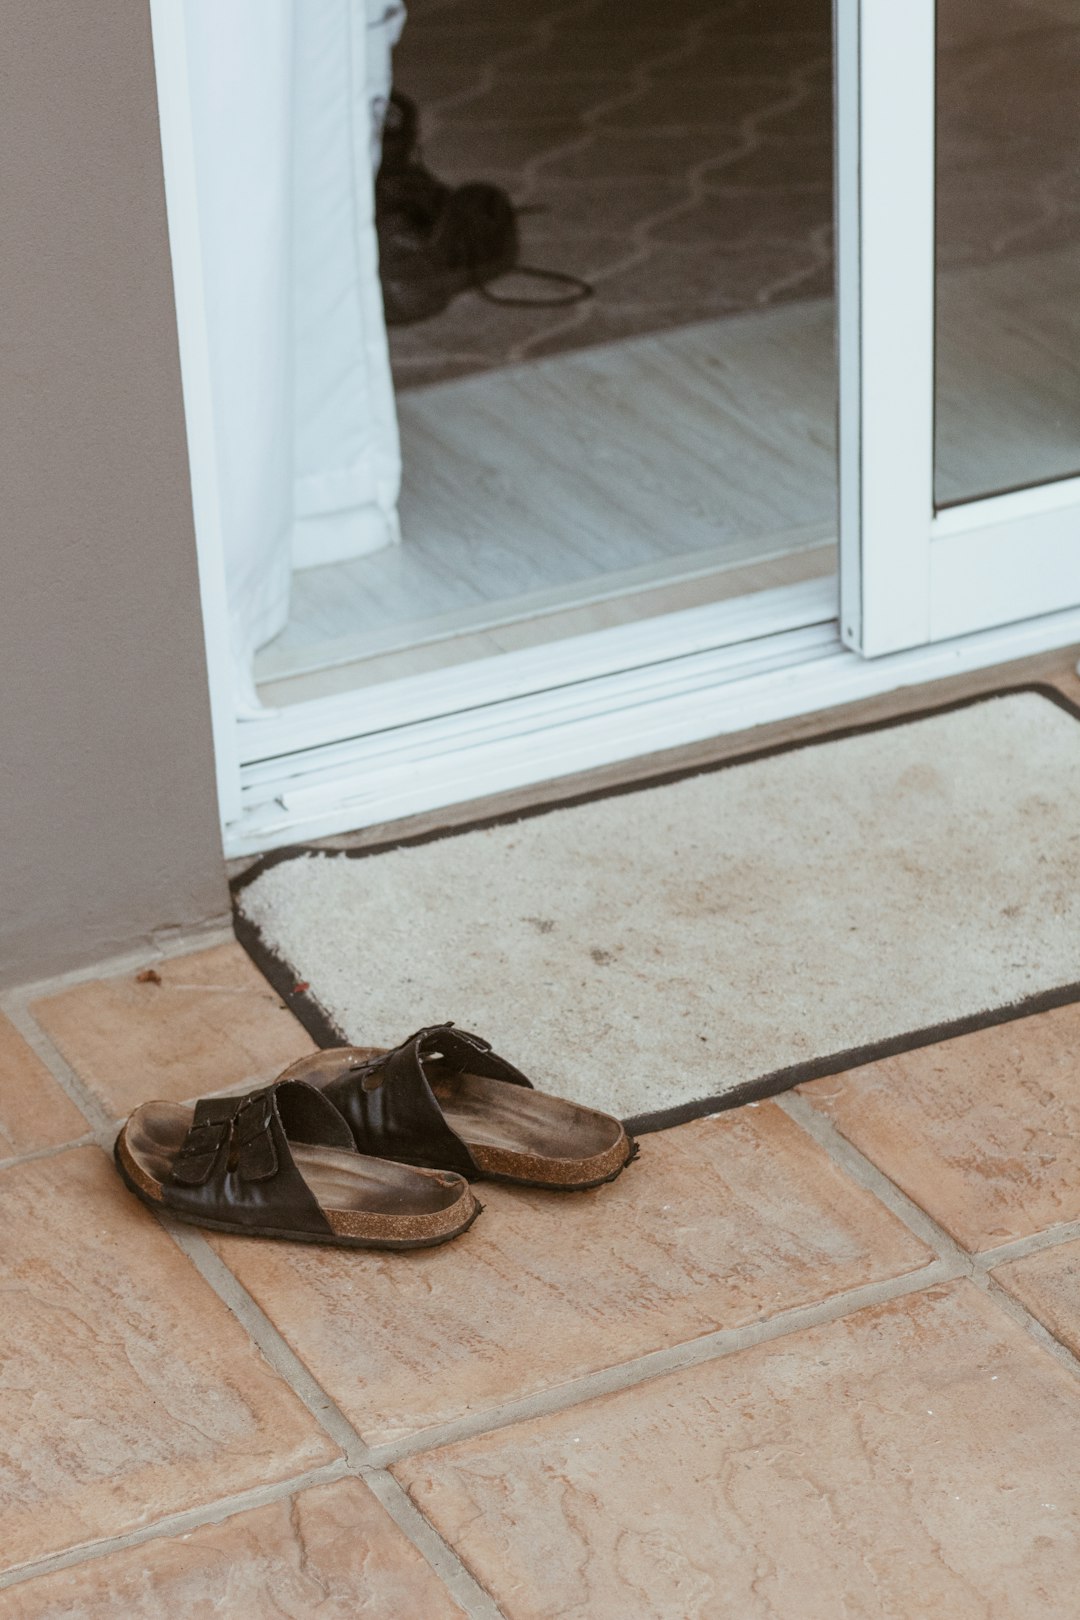  brown leather shoes on floor doormat